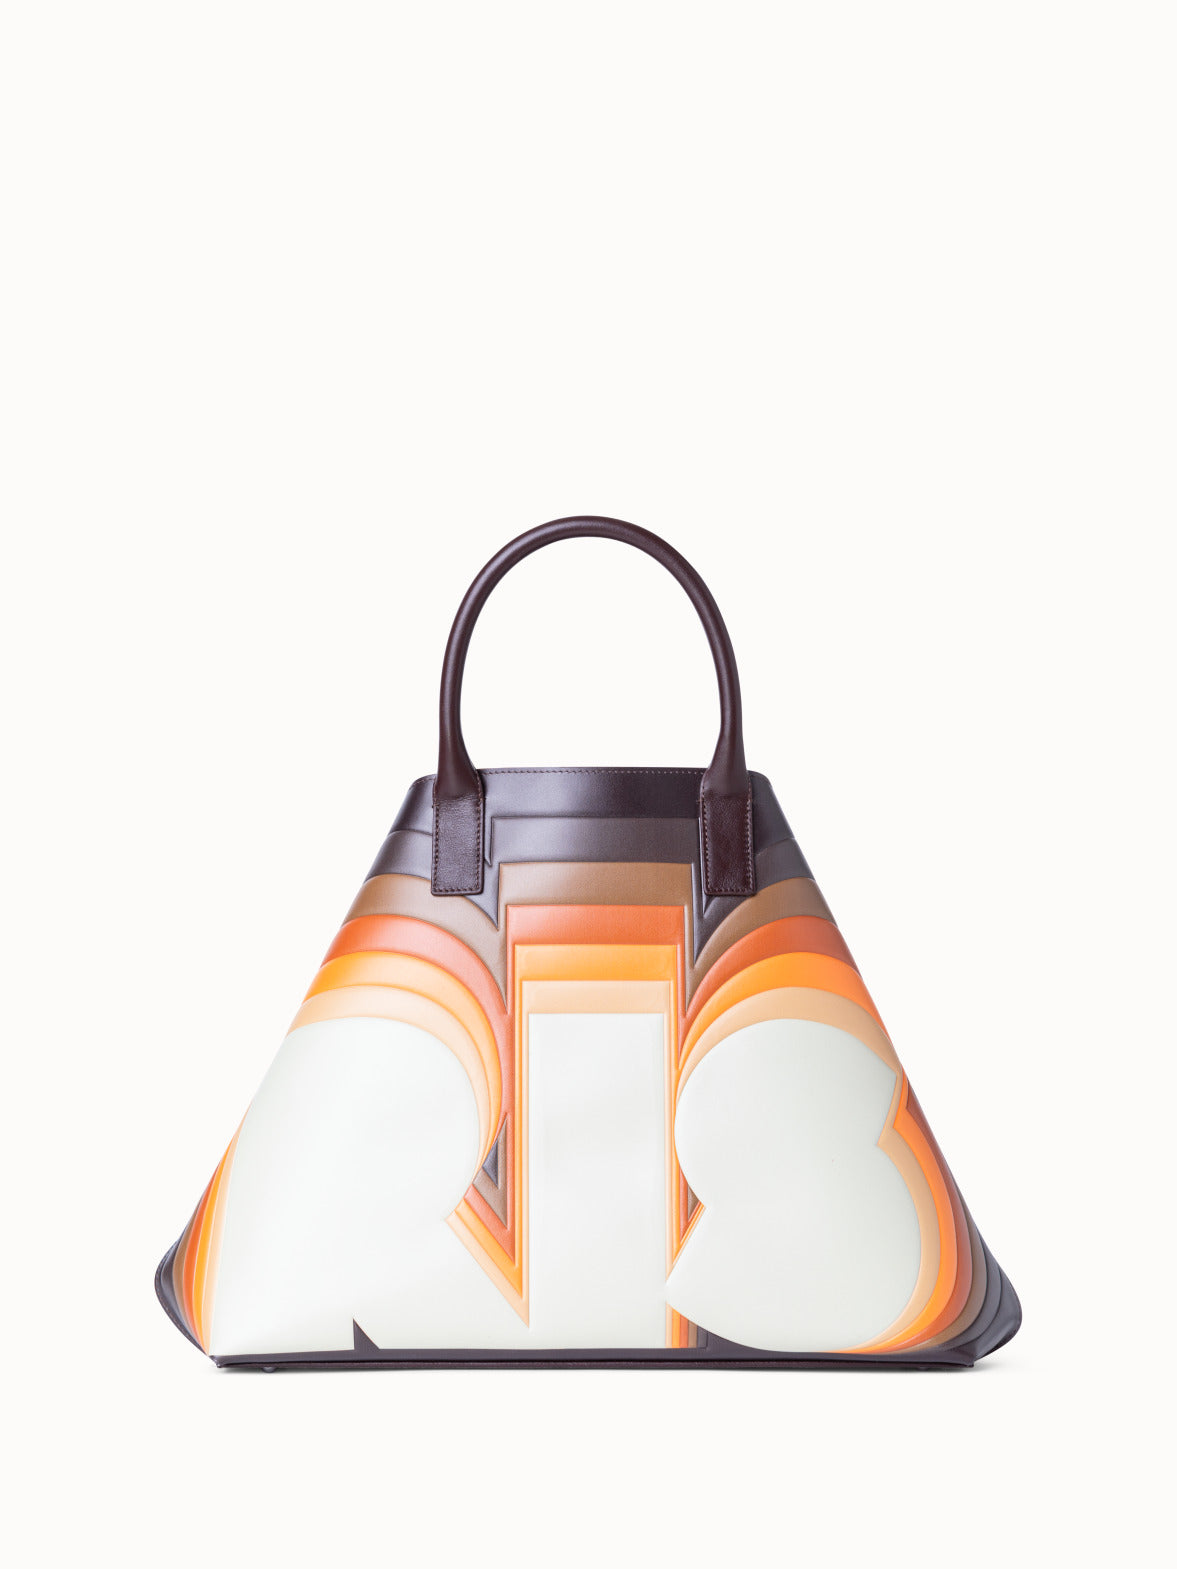 Louis Vuitton bag Capucines White Leather 3D model